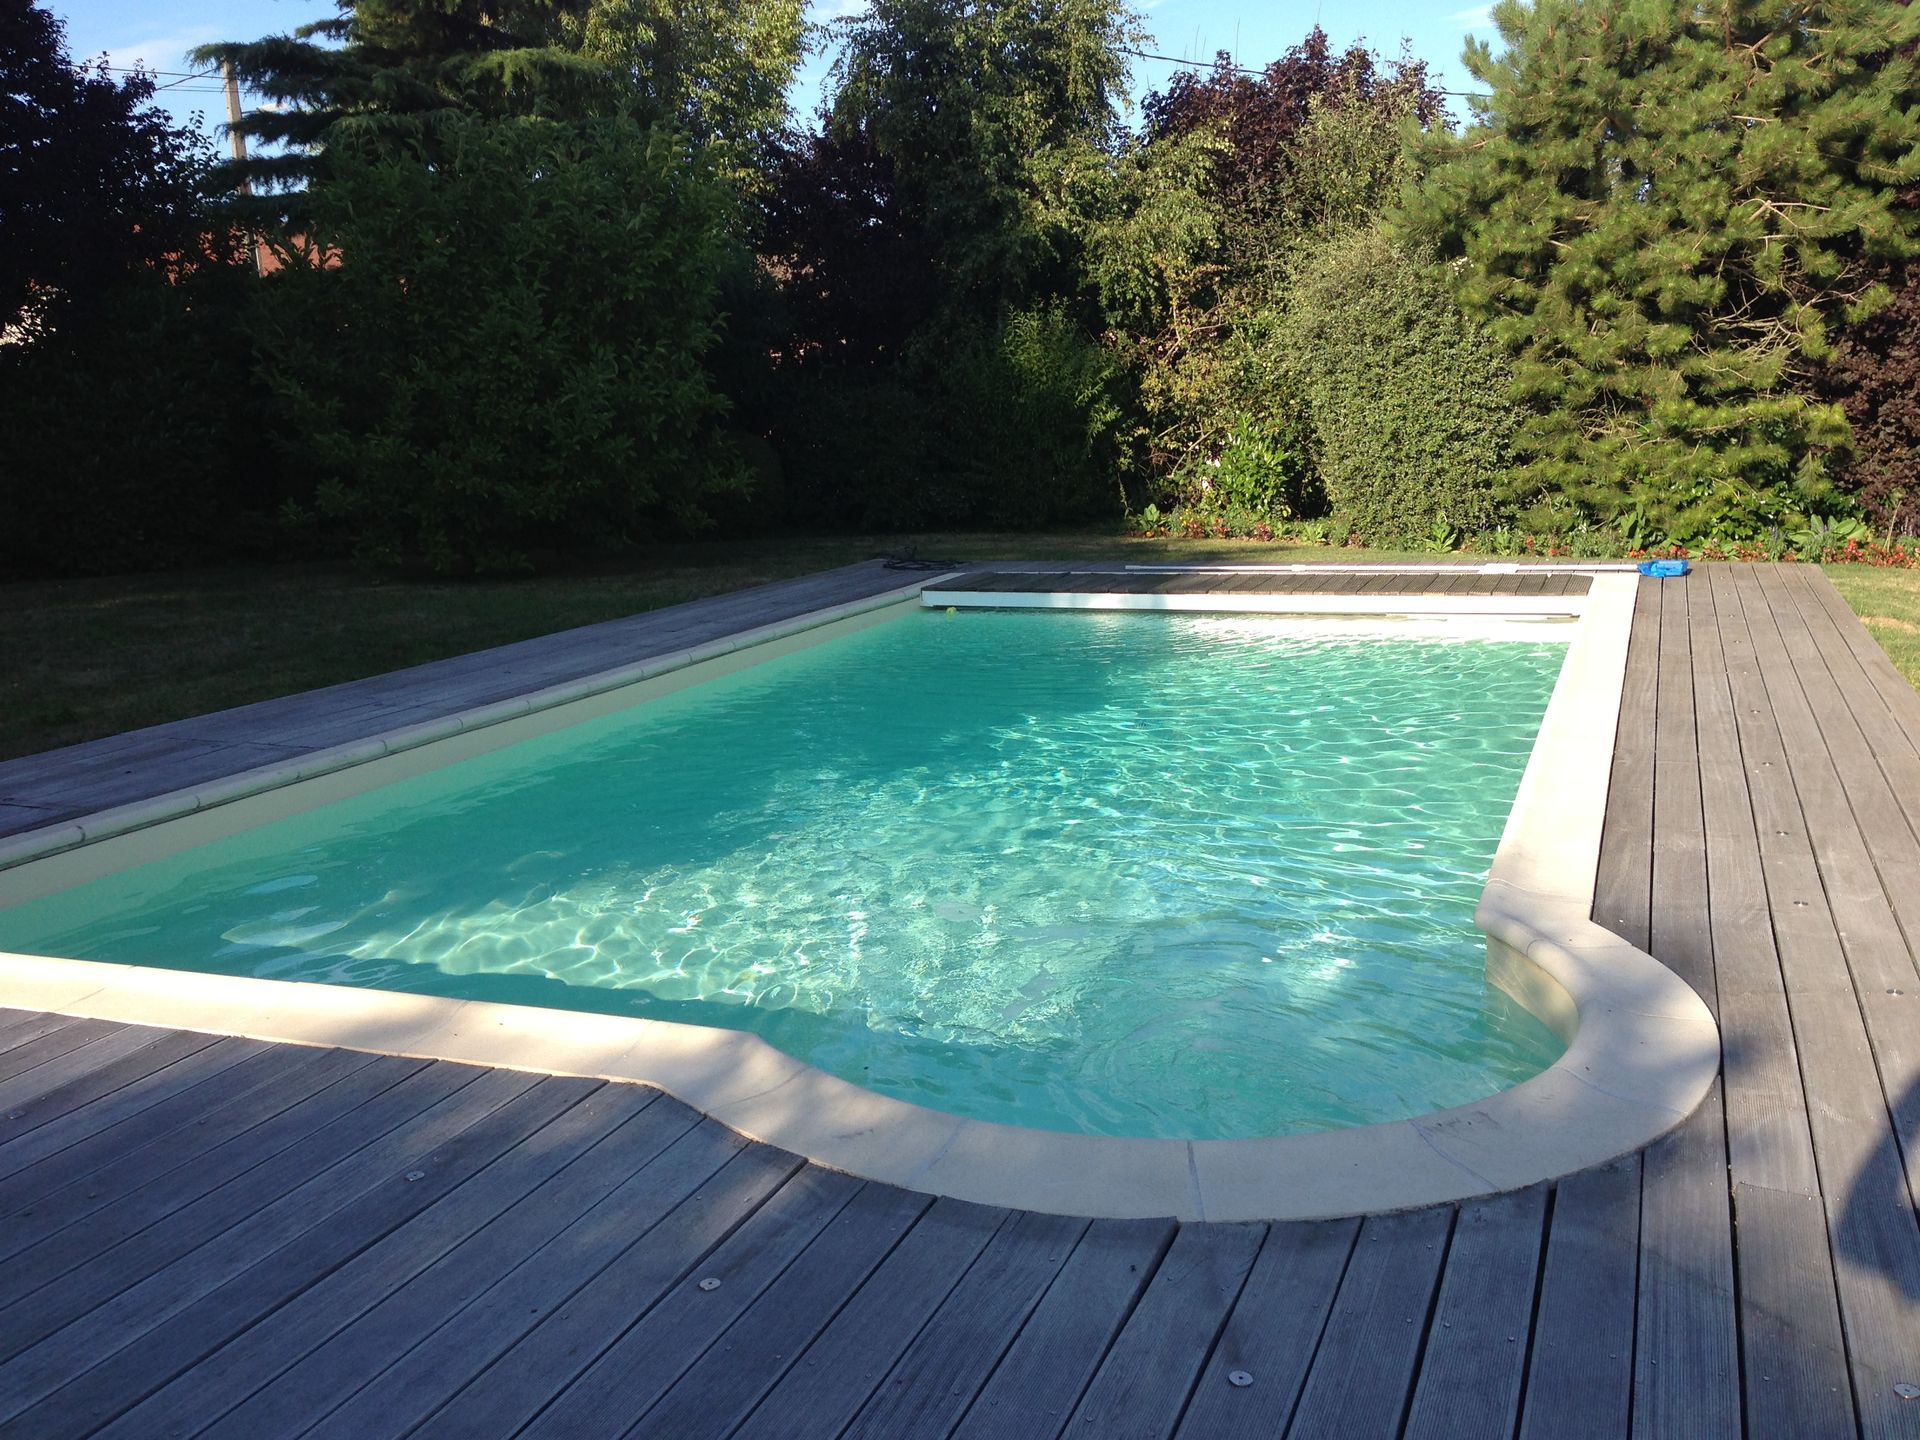 Une piscine entourée d'une terrasse en bois et avec un coin arrondi